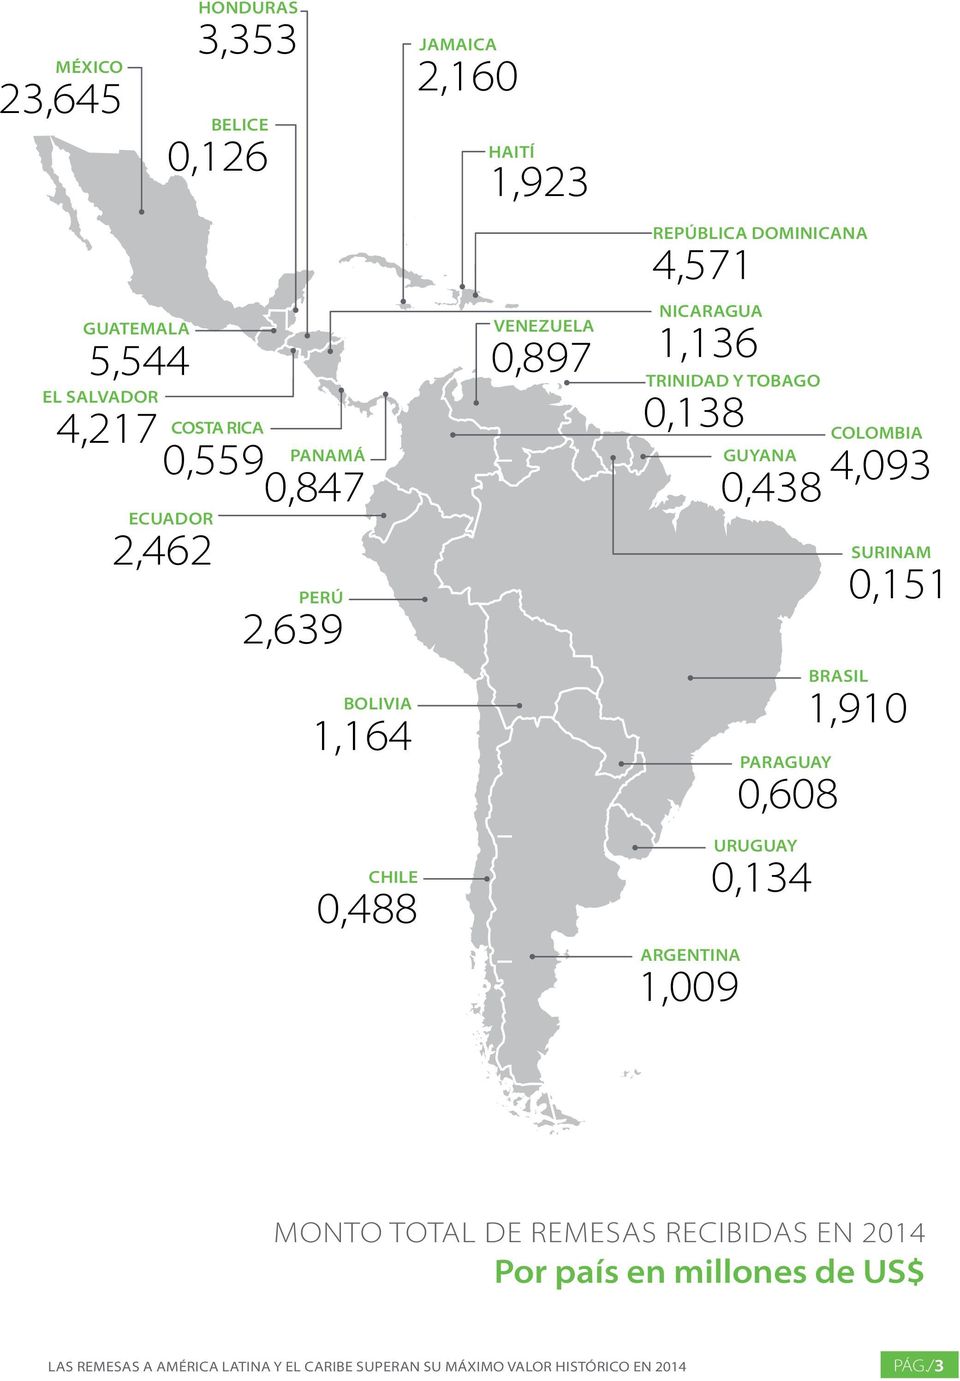 Tobago 0,138 Argentina 1,009 Guyana 0,438 Paraguay 0,608 Uruguay 0,134 colombia 4,093 Surinam 0,151 BraSil 1,910 monto total DE